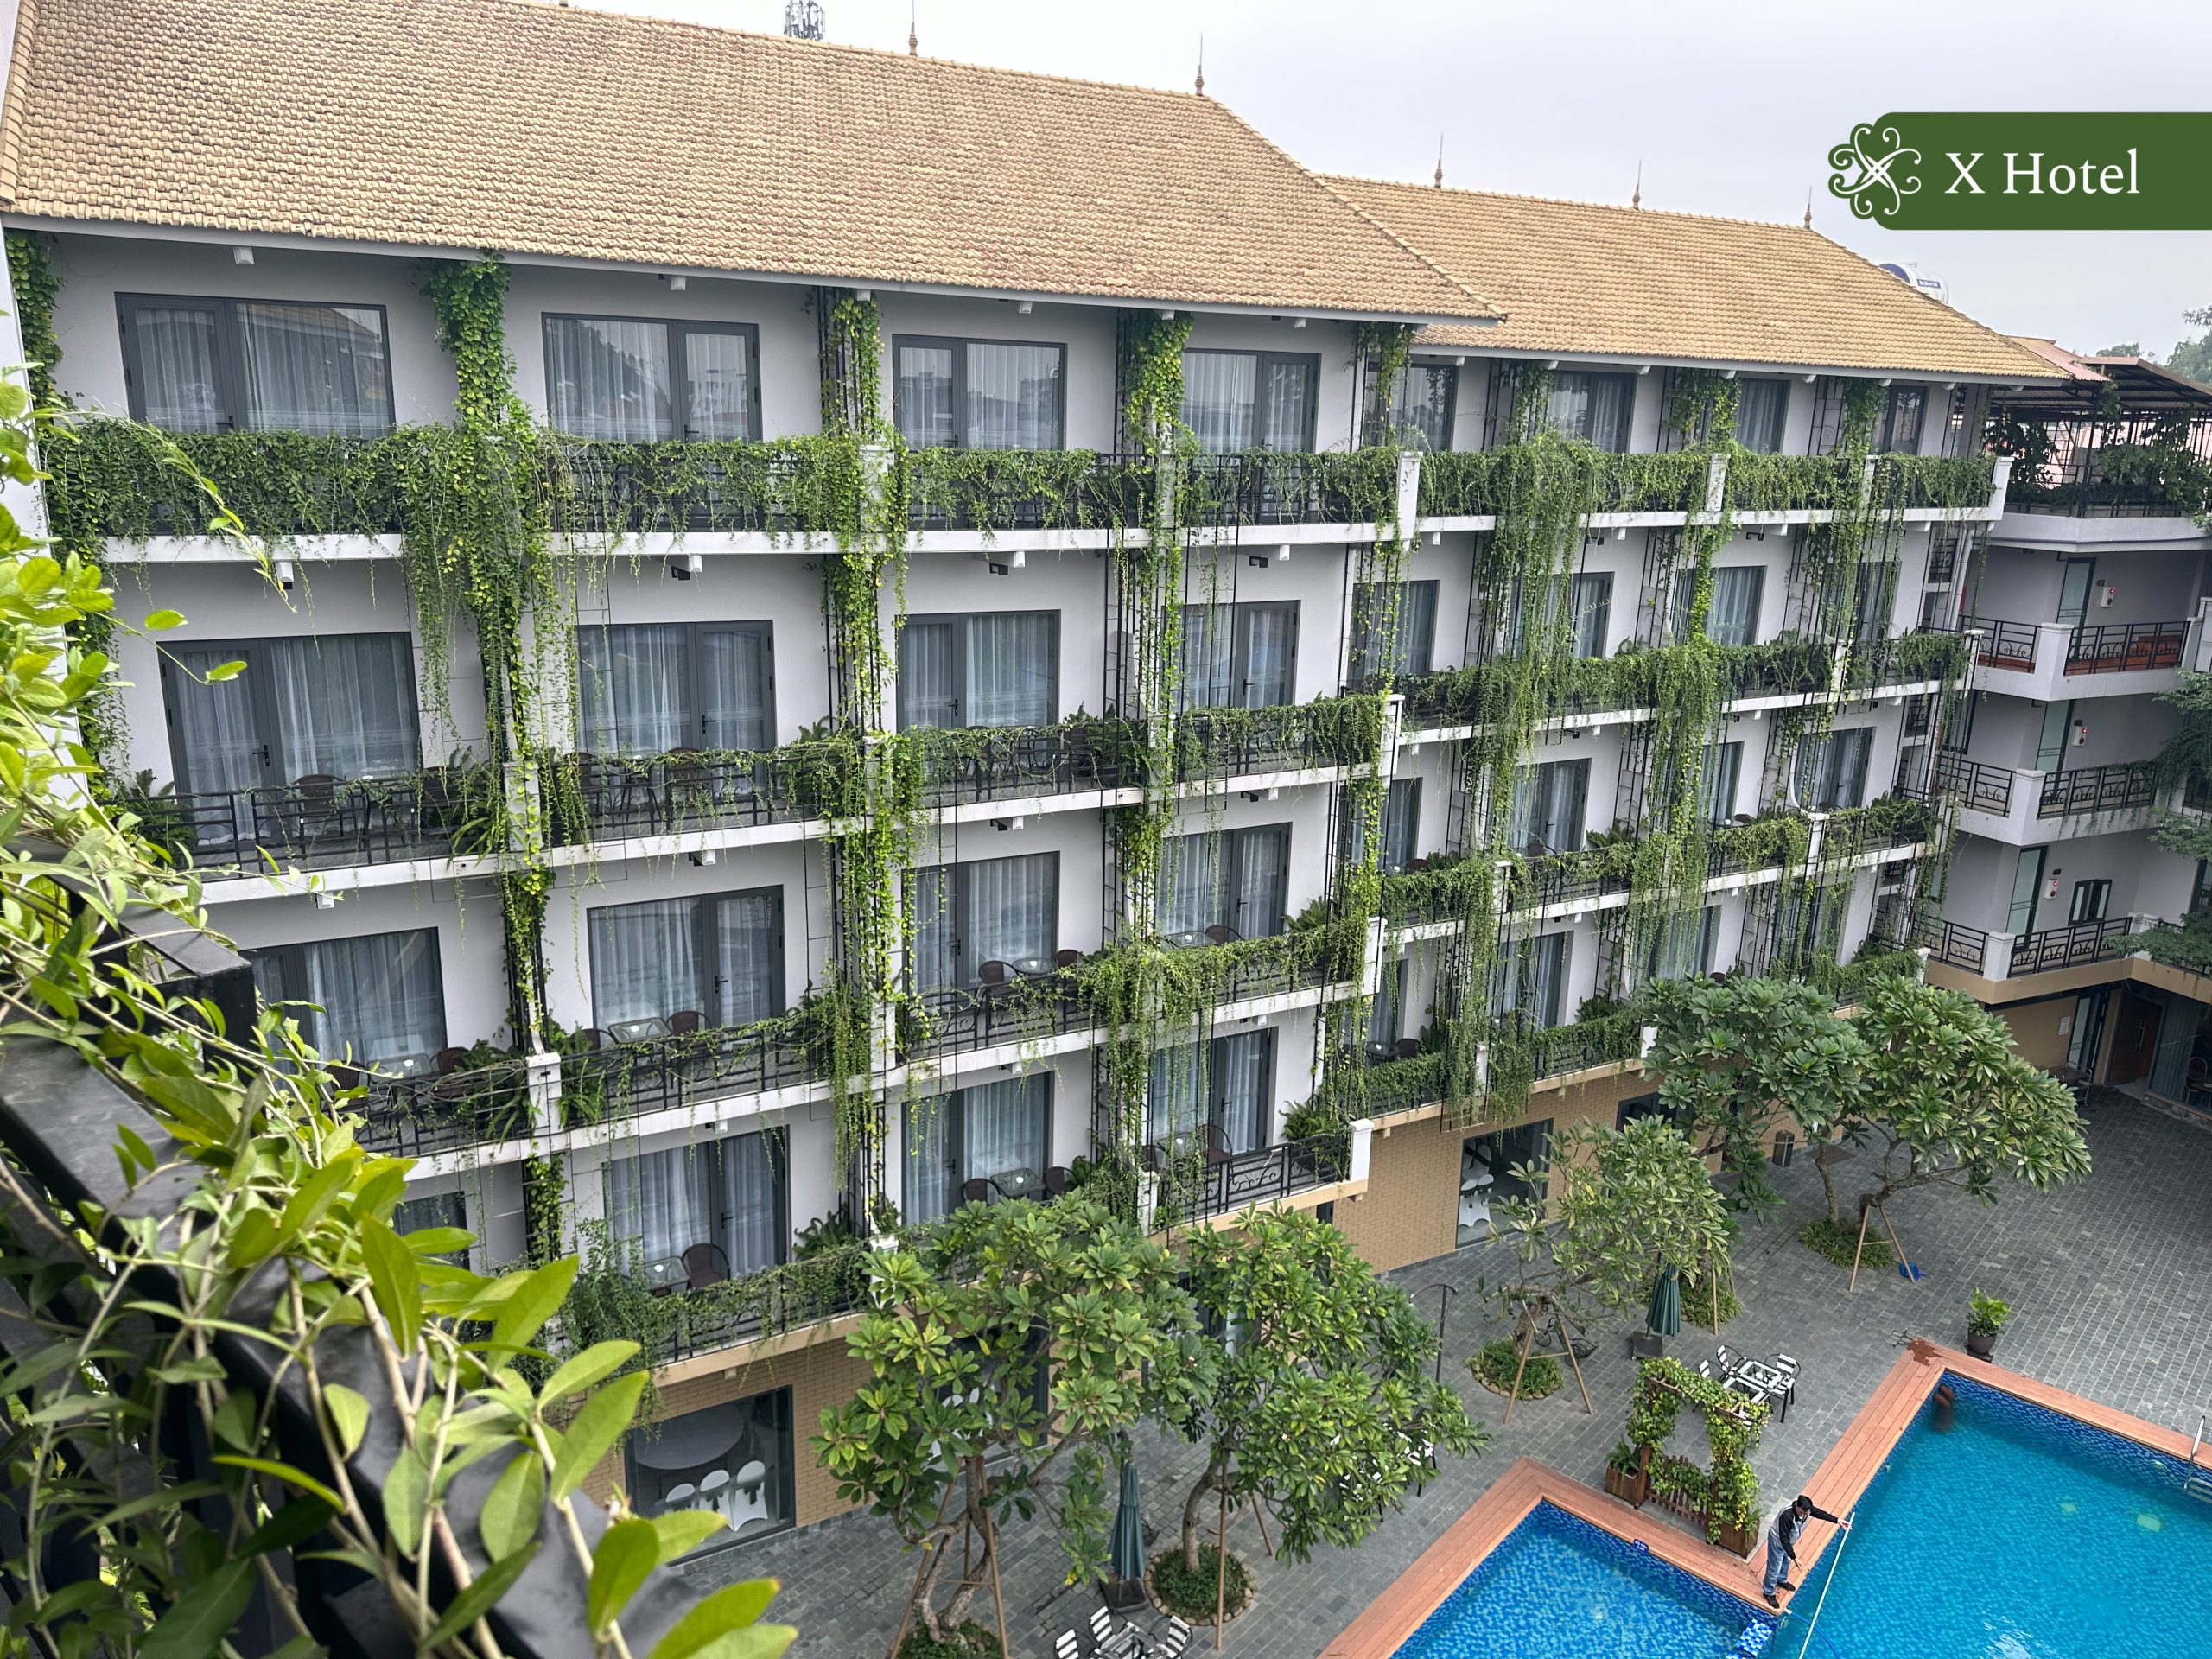 Đặt phòng khách sạn Thái Nguyên X Hotel sở hữu kiến trúc xanh độc đáo